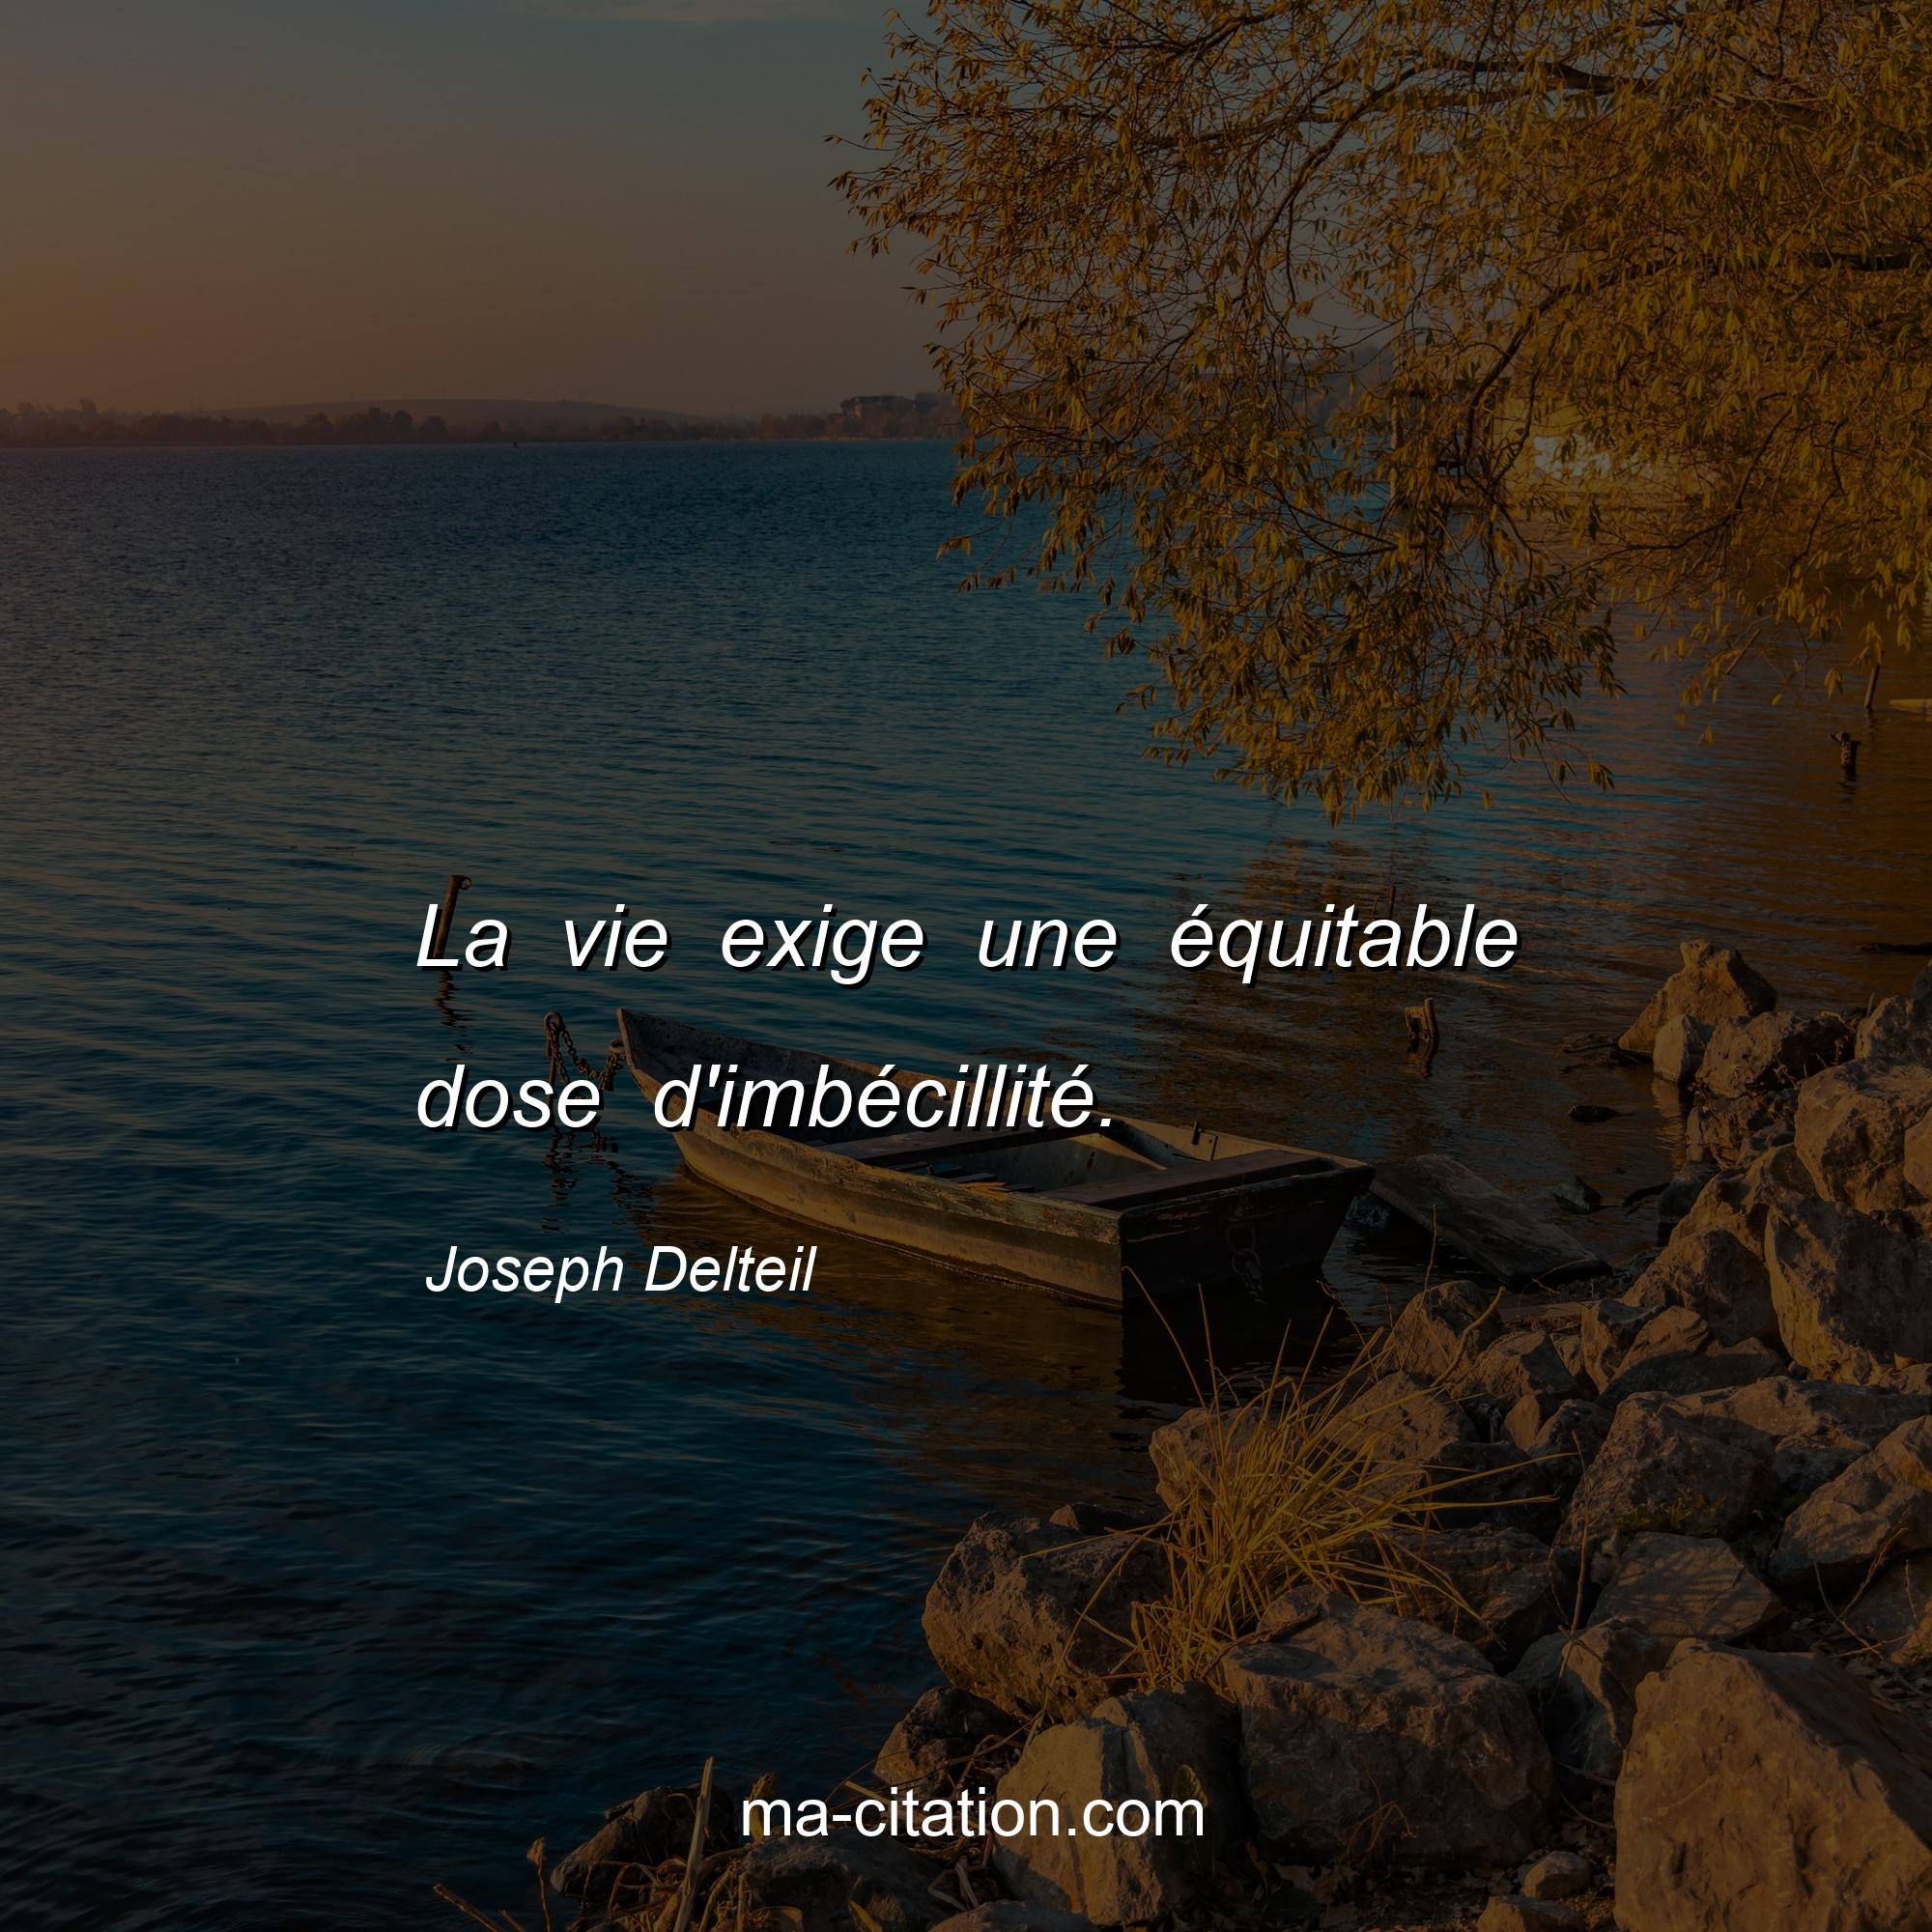 Joseph Delteil : La vie exige une équitable dose d'imbécillité.